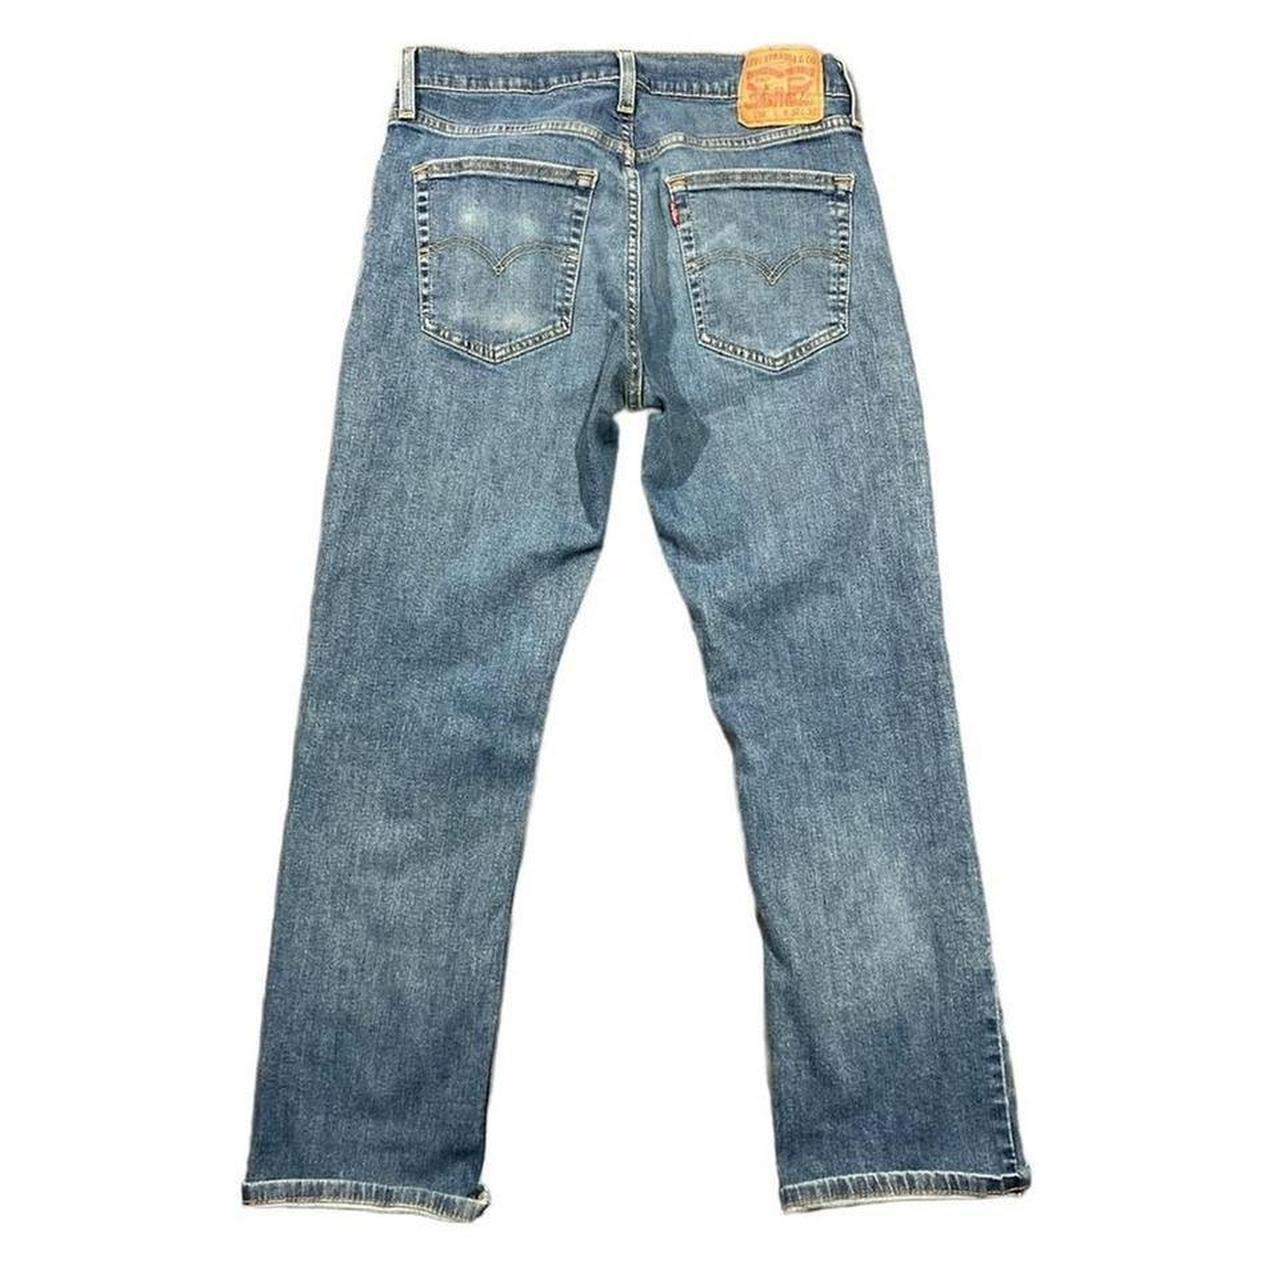 Vintage Levi’s 559 classic fit jeans Classic Levi’s... - Depop